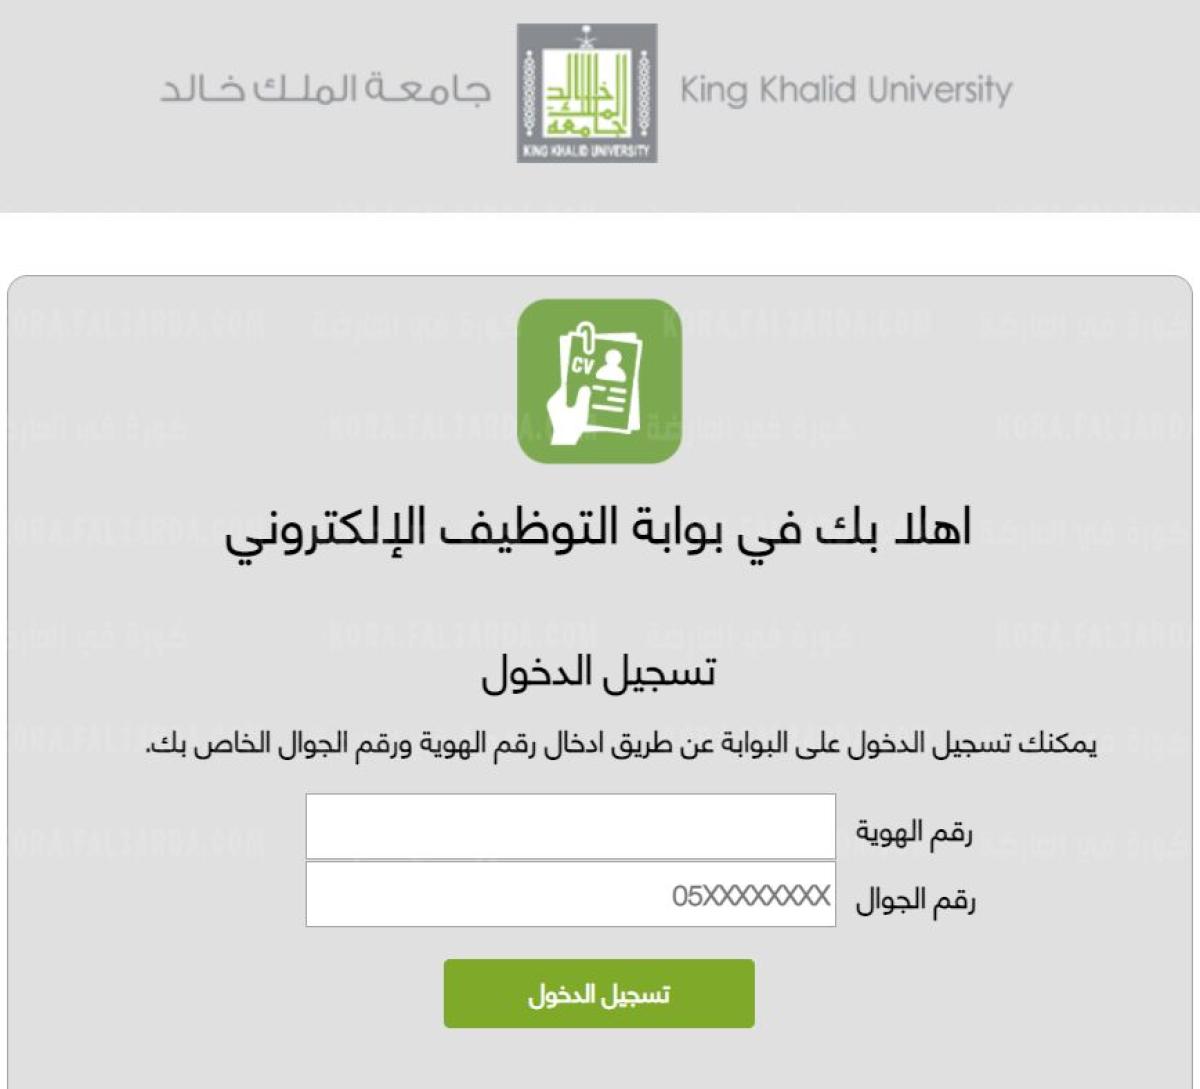 وظائف جامعة الملك خالد وظائف شاغرة بنظام العقود وتوفير 127 وظيفية للجنسيين رجال/ ونساء